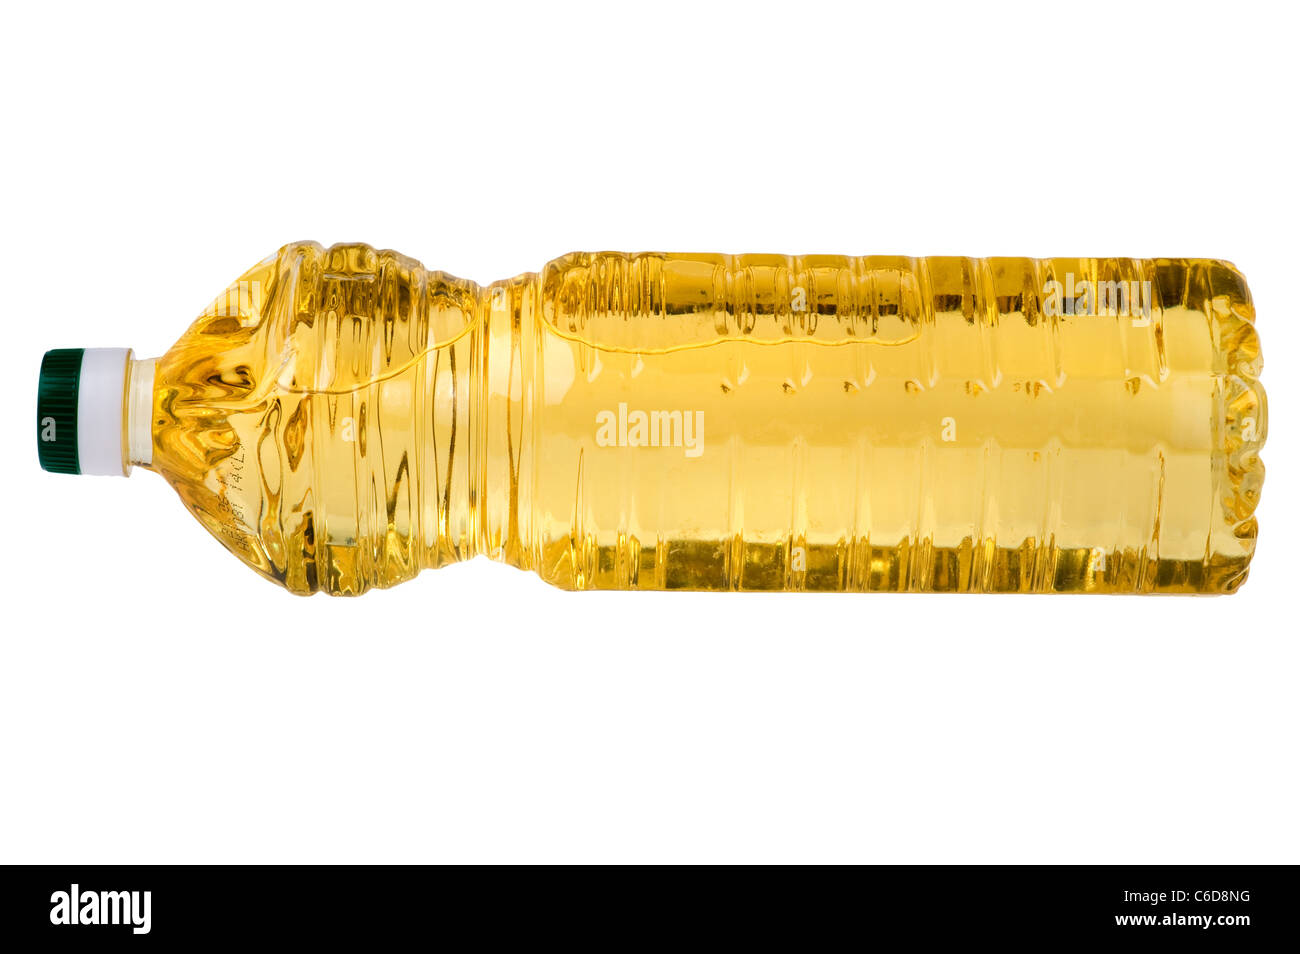 Objet sur blanc - bouteille d'huile close up Banque D'Images